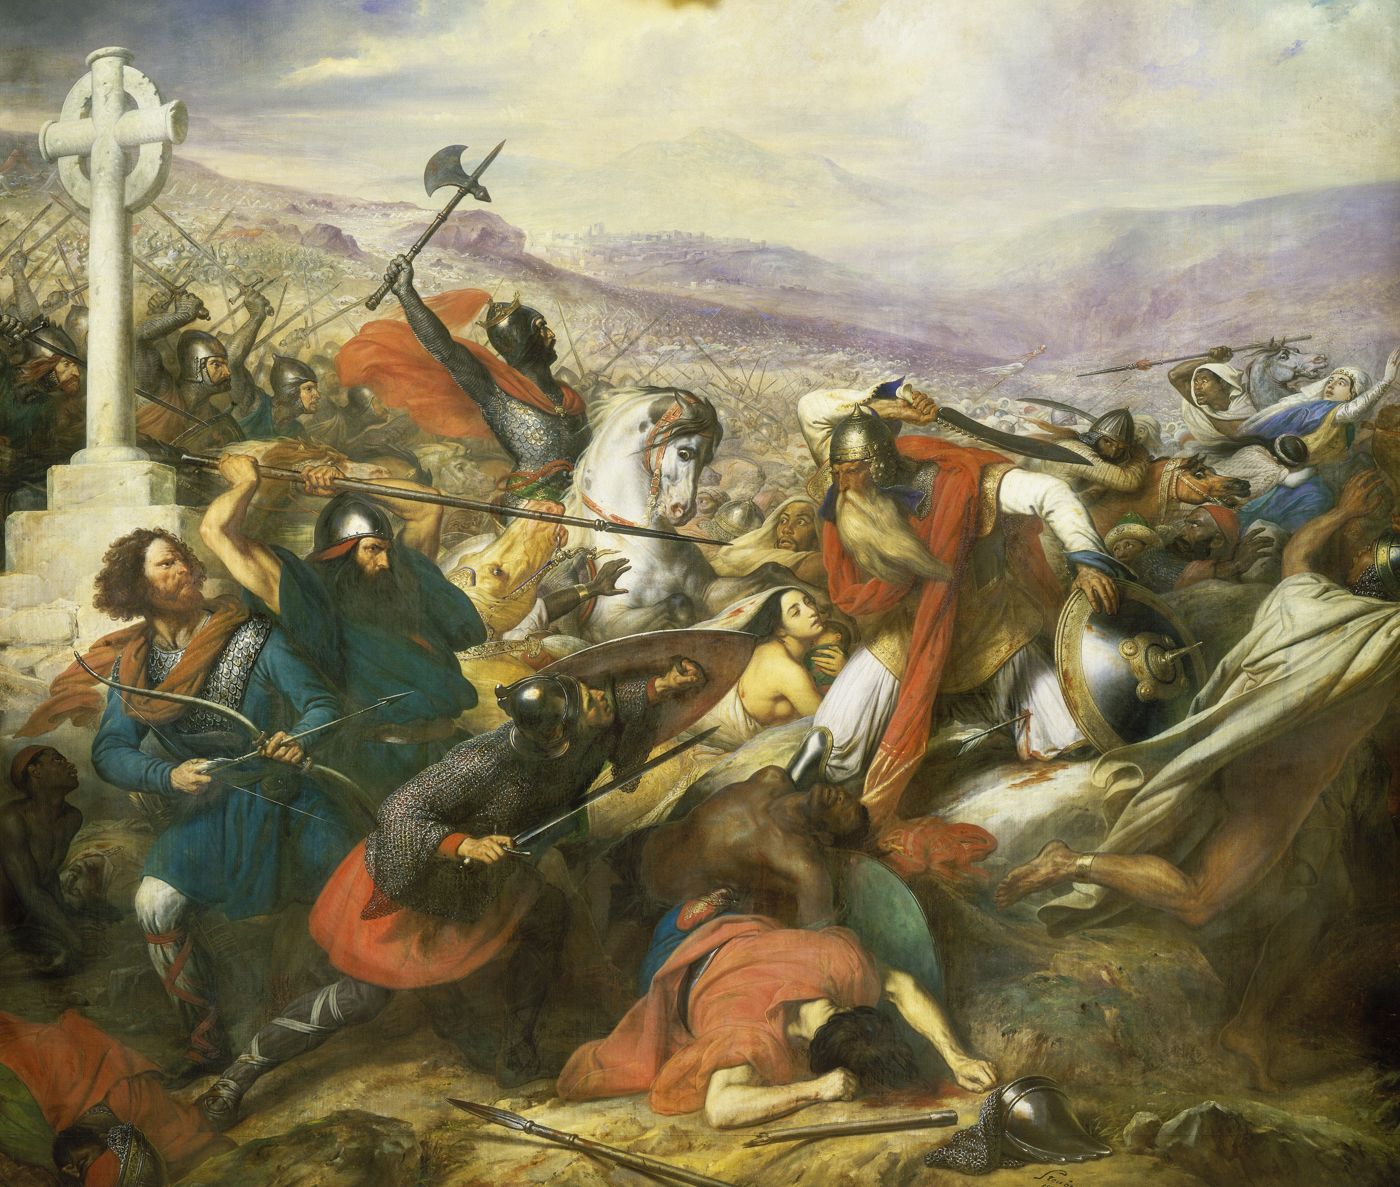 La bataille de Poitiers - Histoire analysée en images et œuvres d